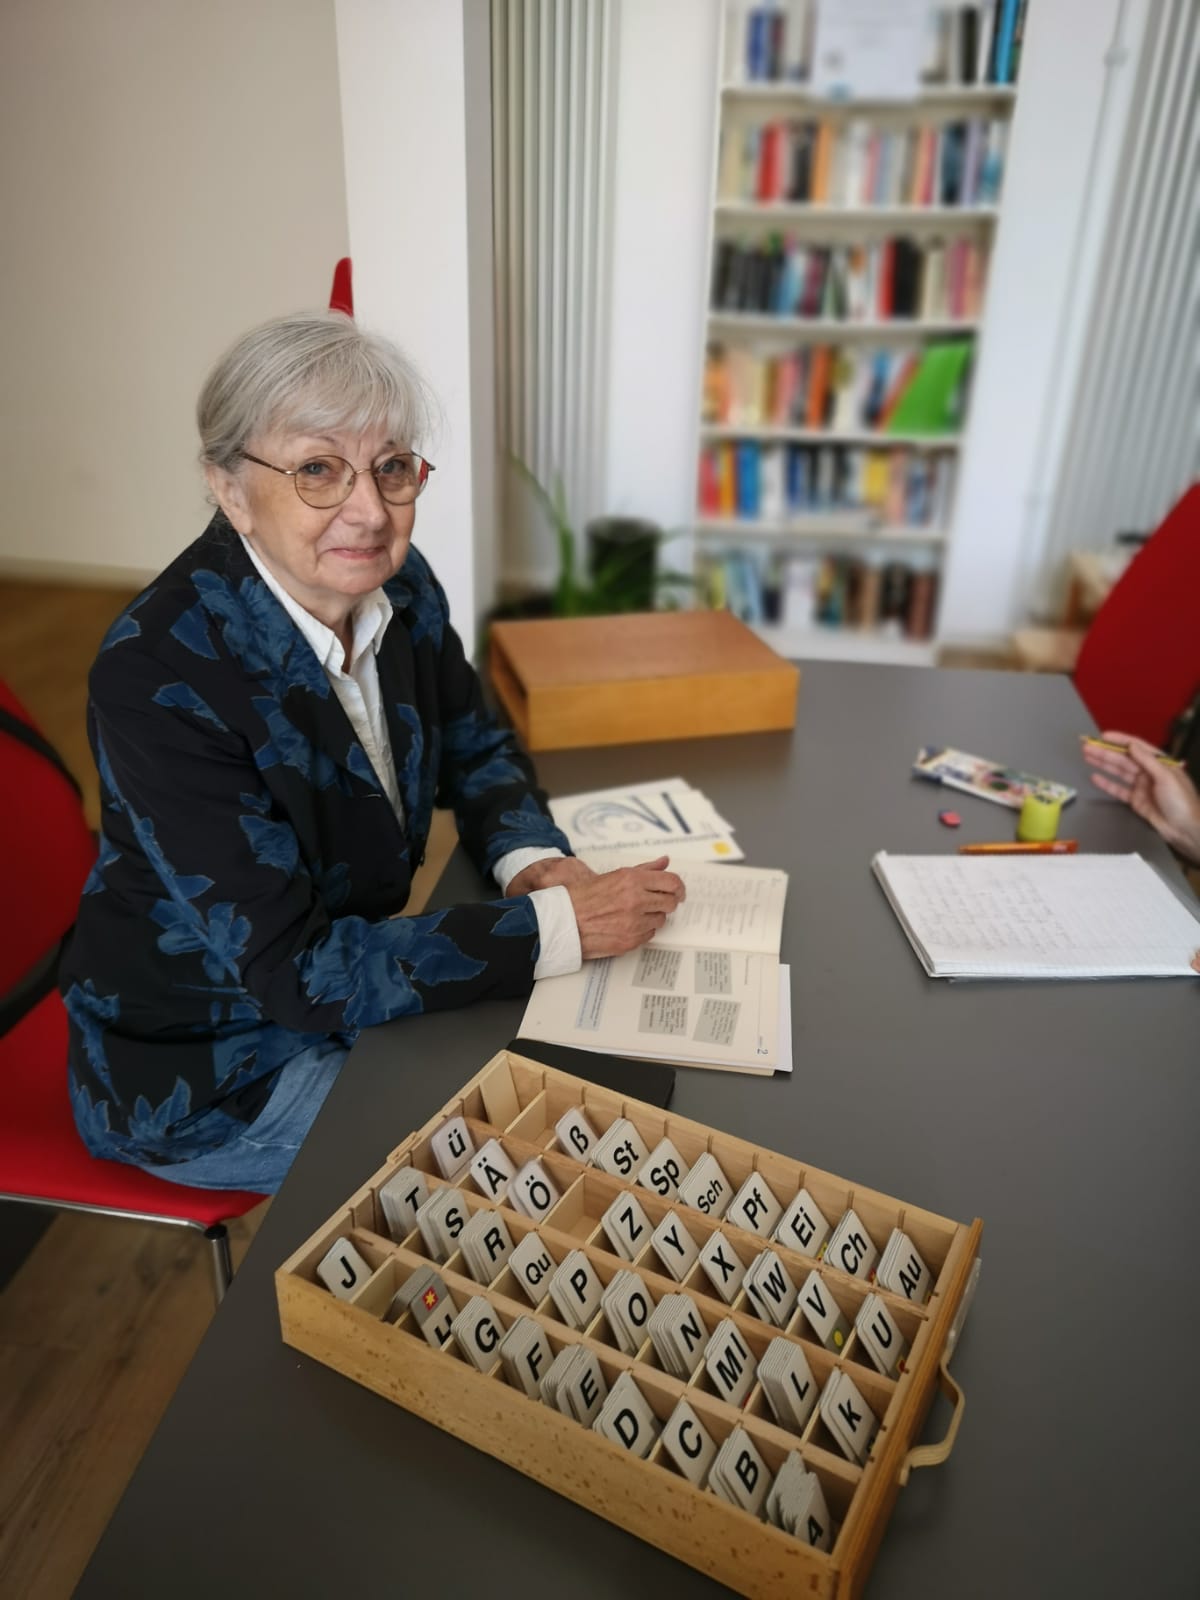 Frau mit grauen Haaren, Brille und blauem Blazer sitzt an einem Tisch, auf dem ein Kasten mit Buchstabenplatten steht